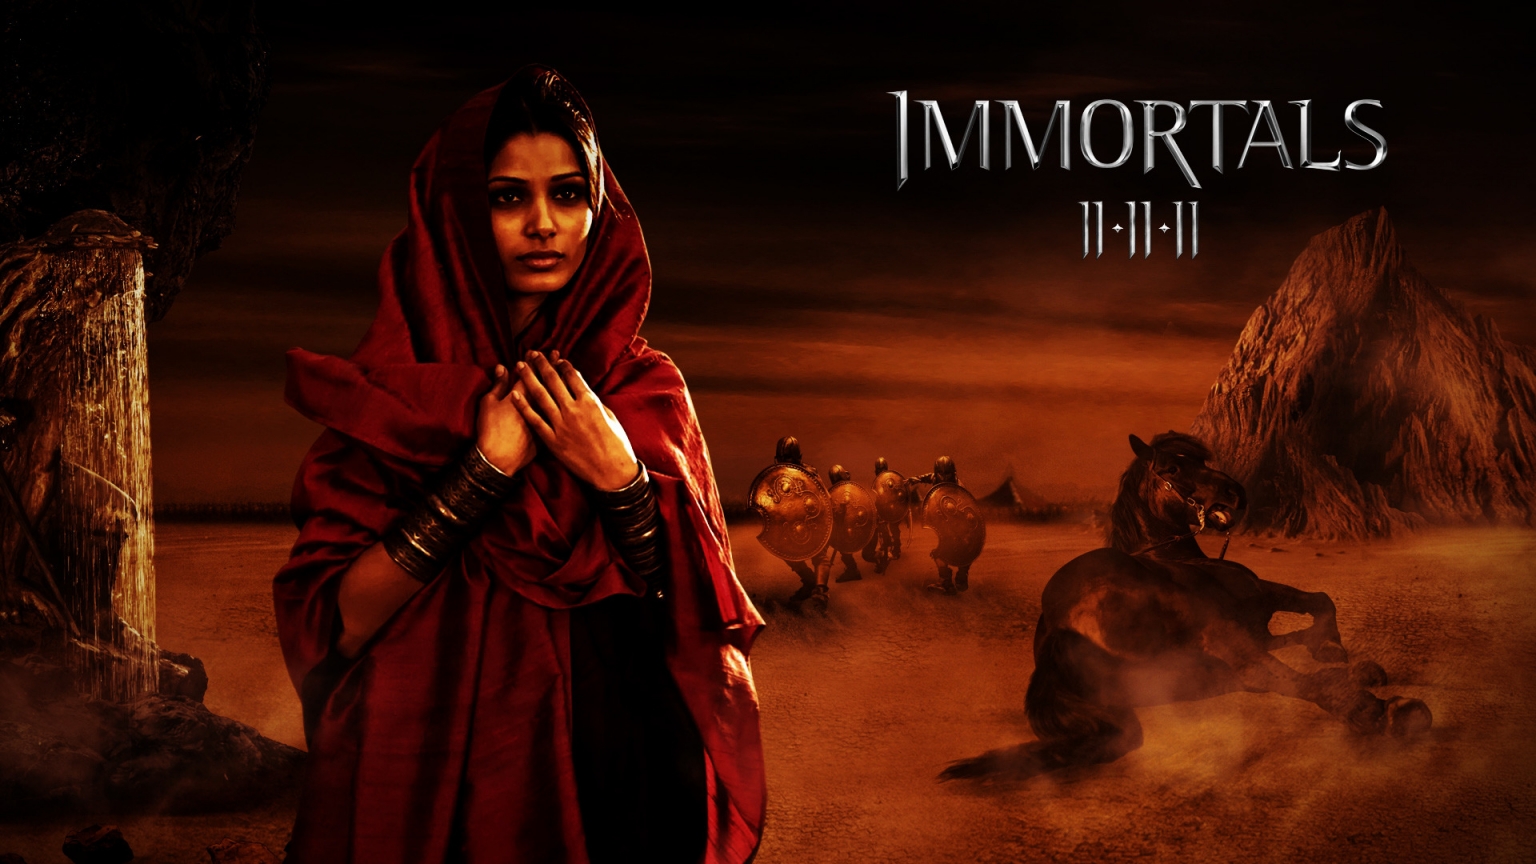 Immortals Movie Scene for 1536 x 864 HDTV resolution